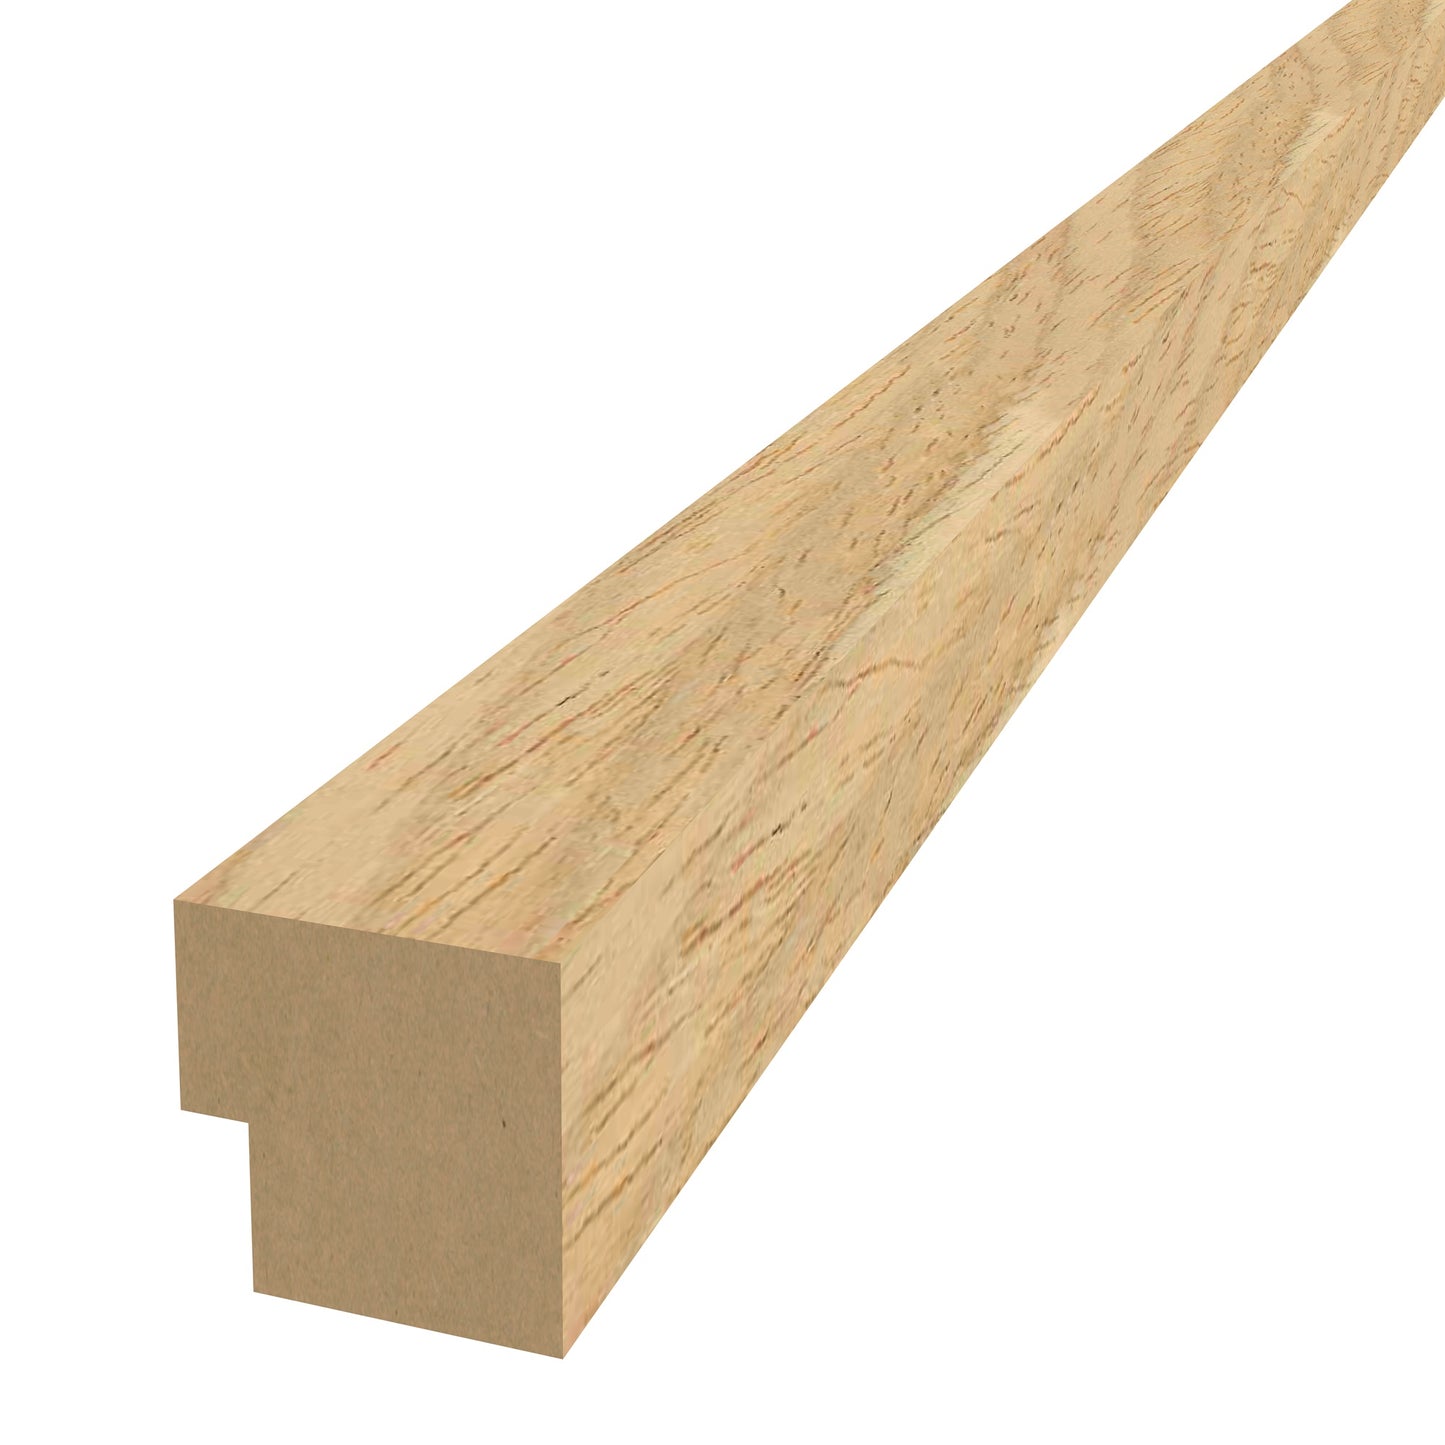 Oak Acoustic Wood Wall Panel End Bar Piece Trim Series 1 - 240cm